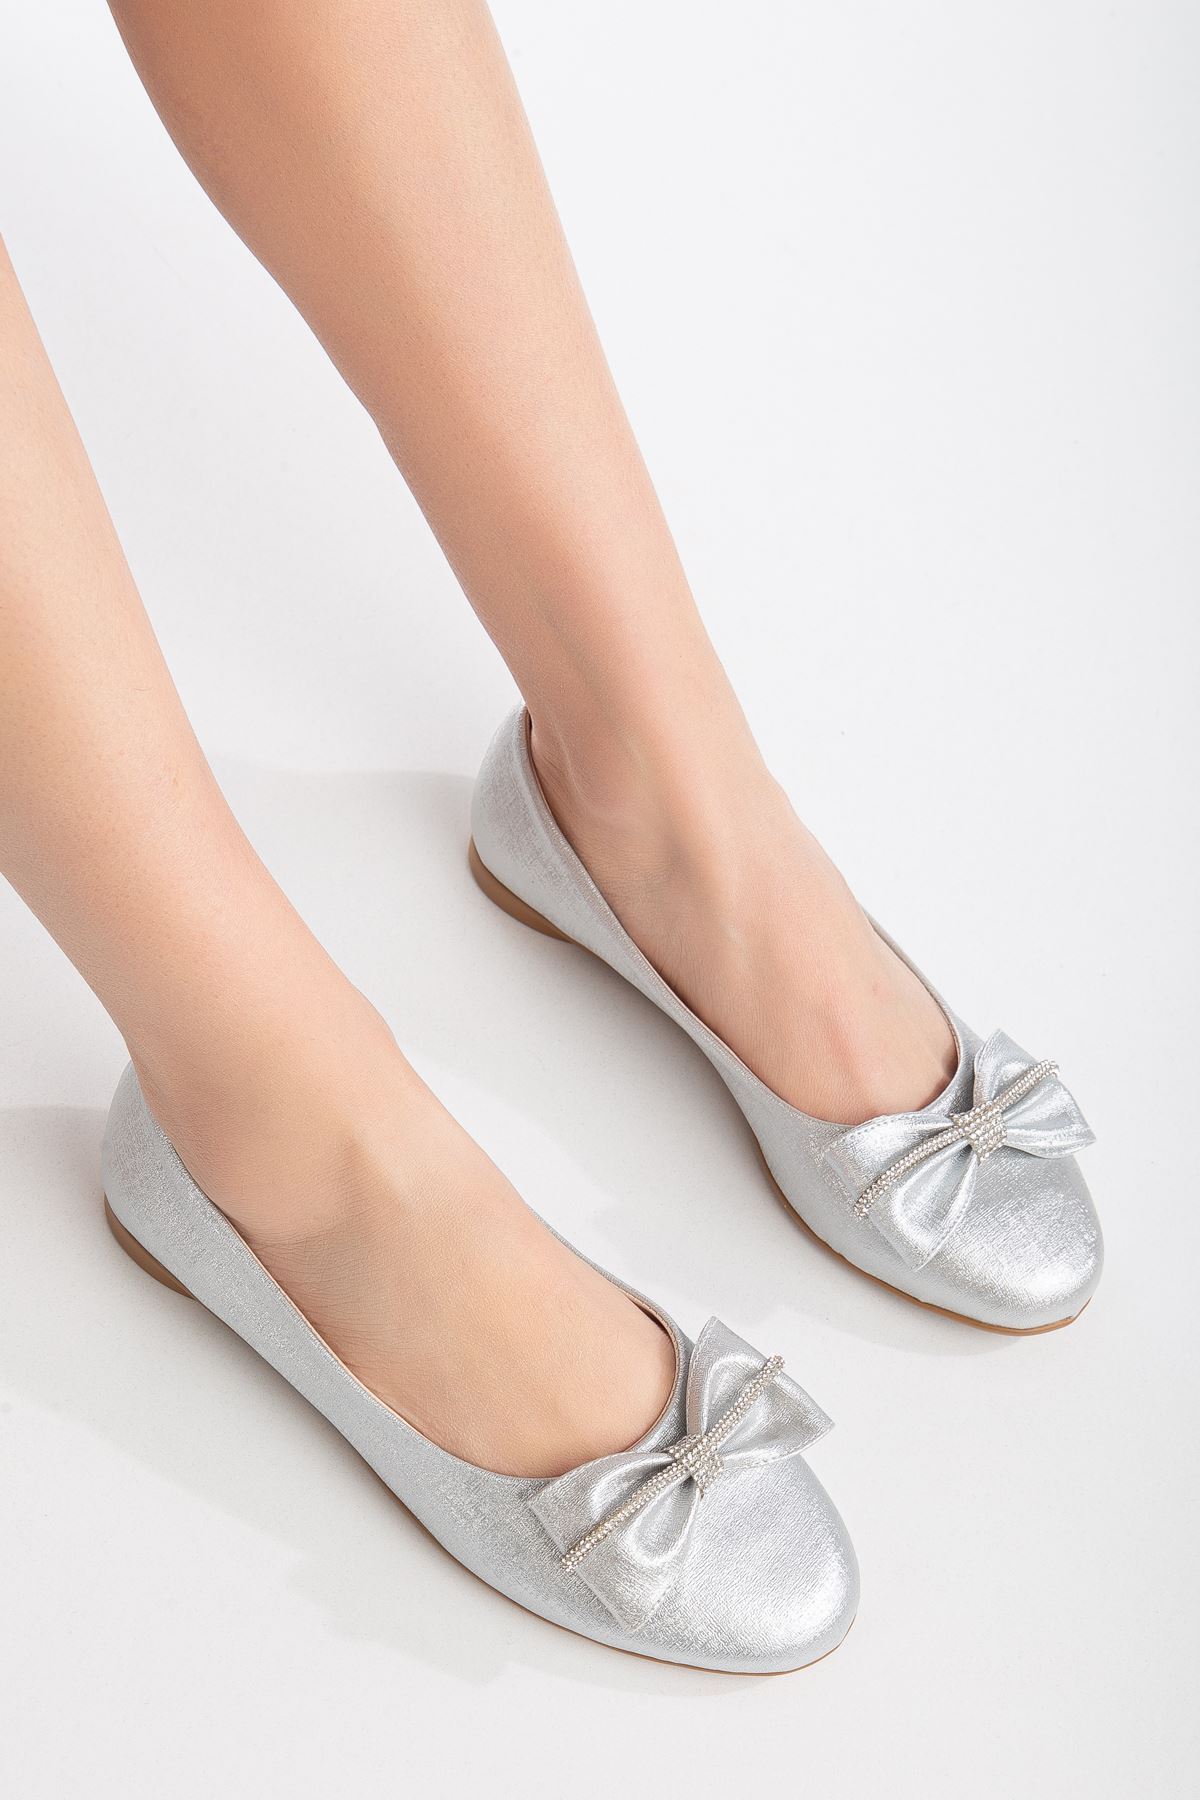 Loyan Babet Gümüş Pırıltı Cilt Ayakkabı